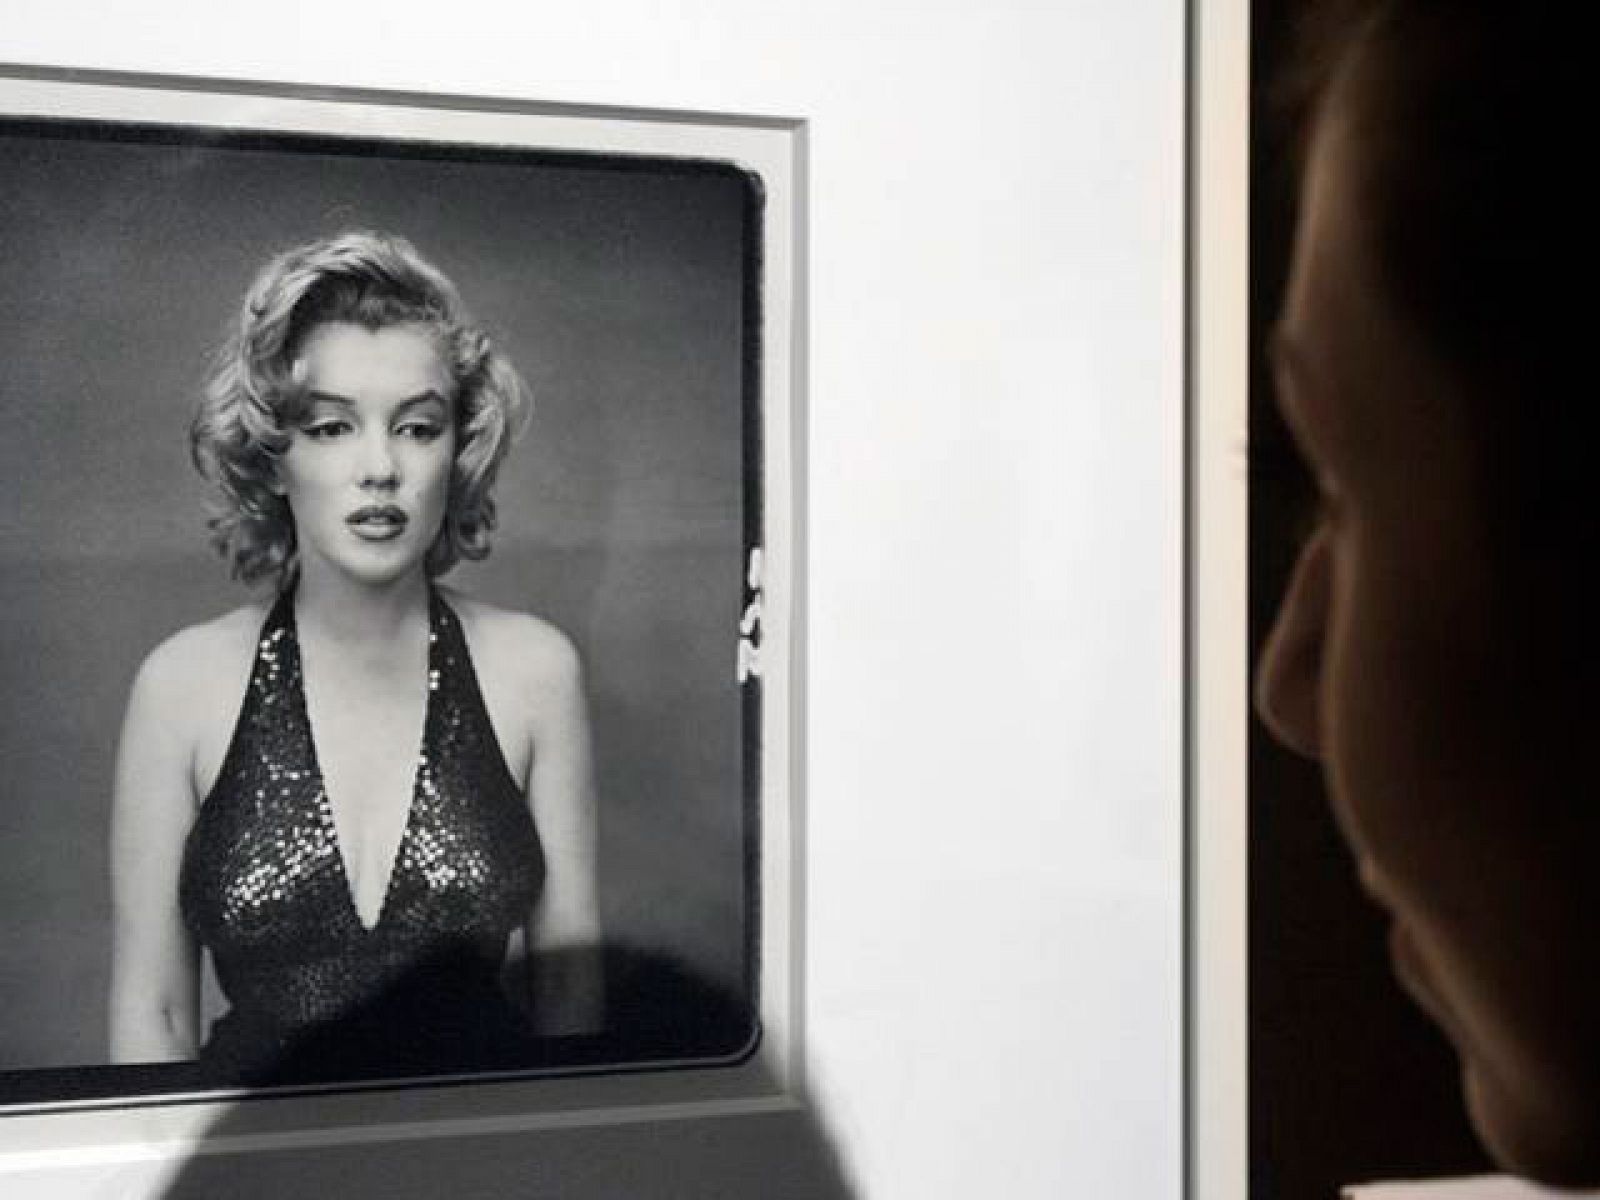 La mañana de la 1 - Marilyn Monroe al desnudo